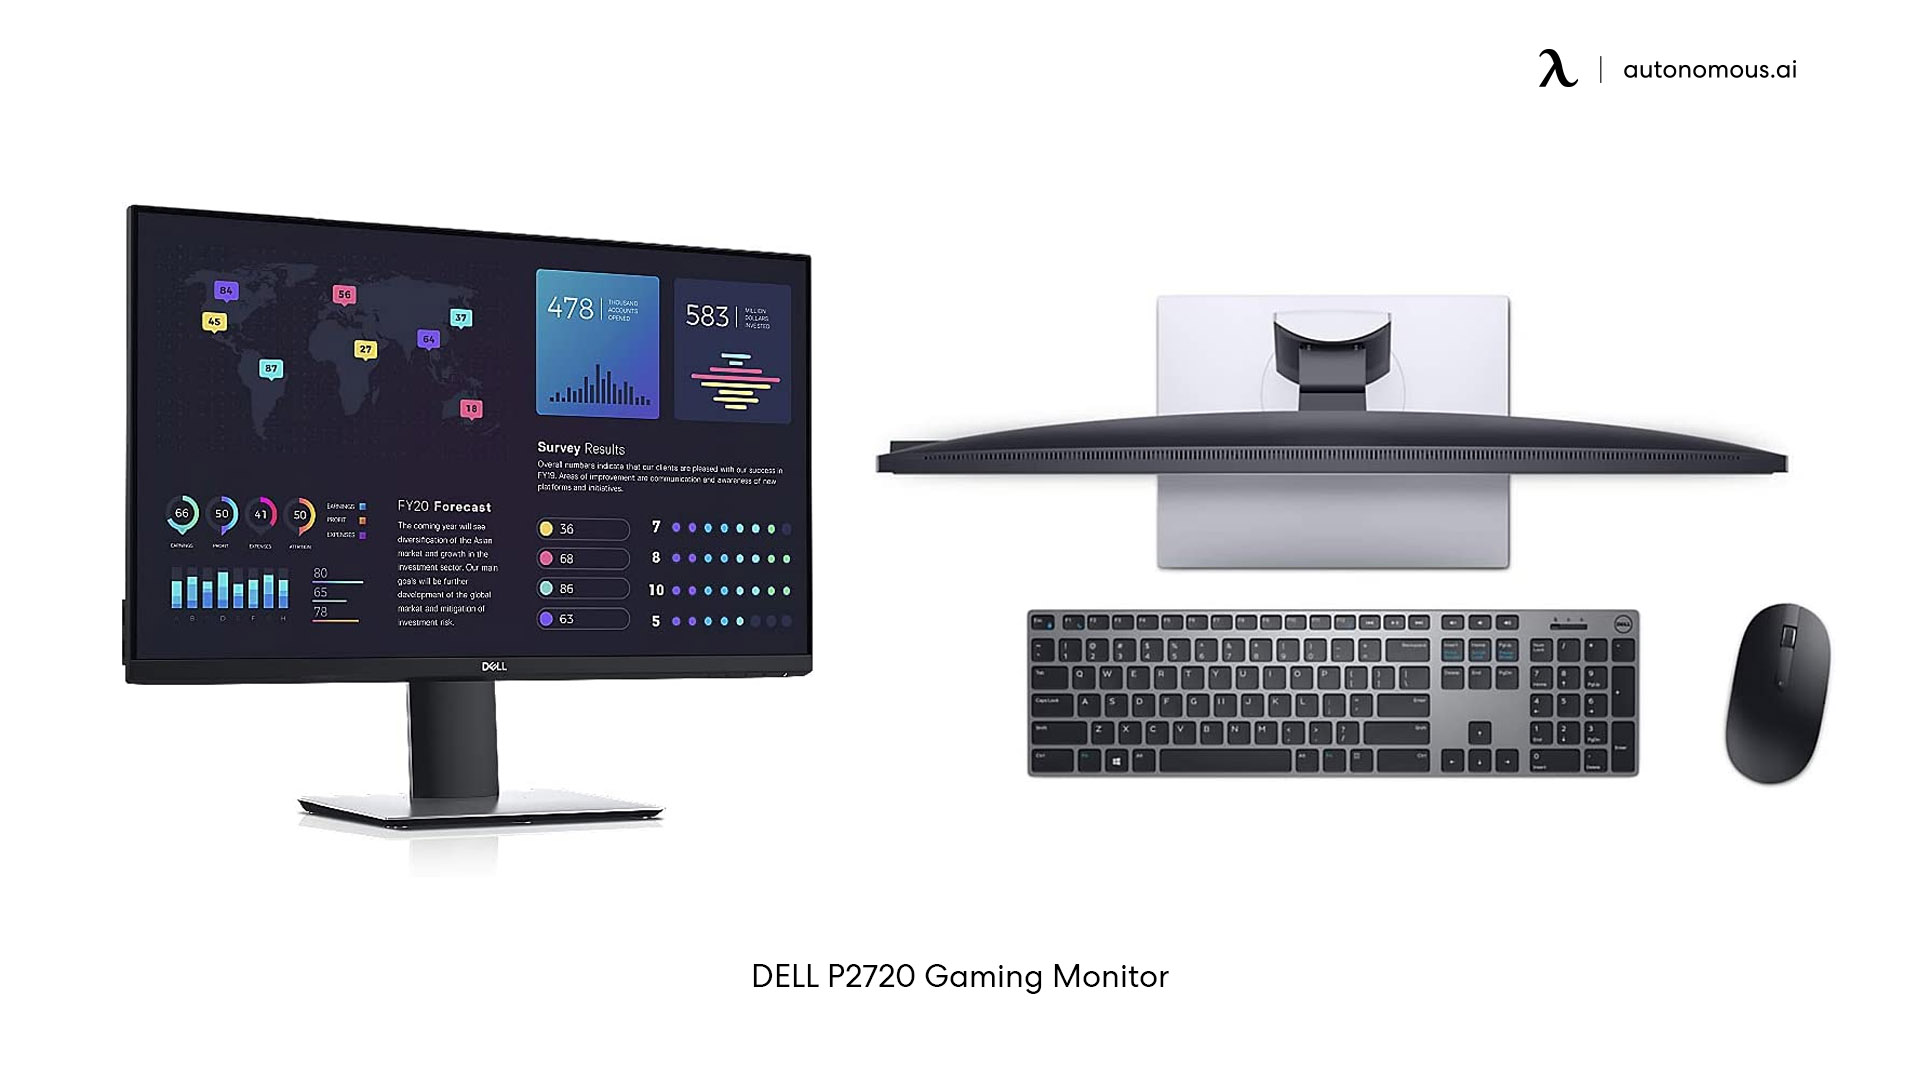 DELL P2720 Gaming Monitor